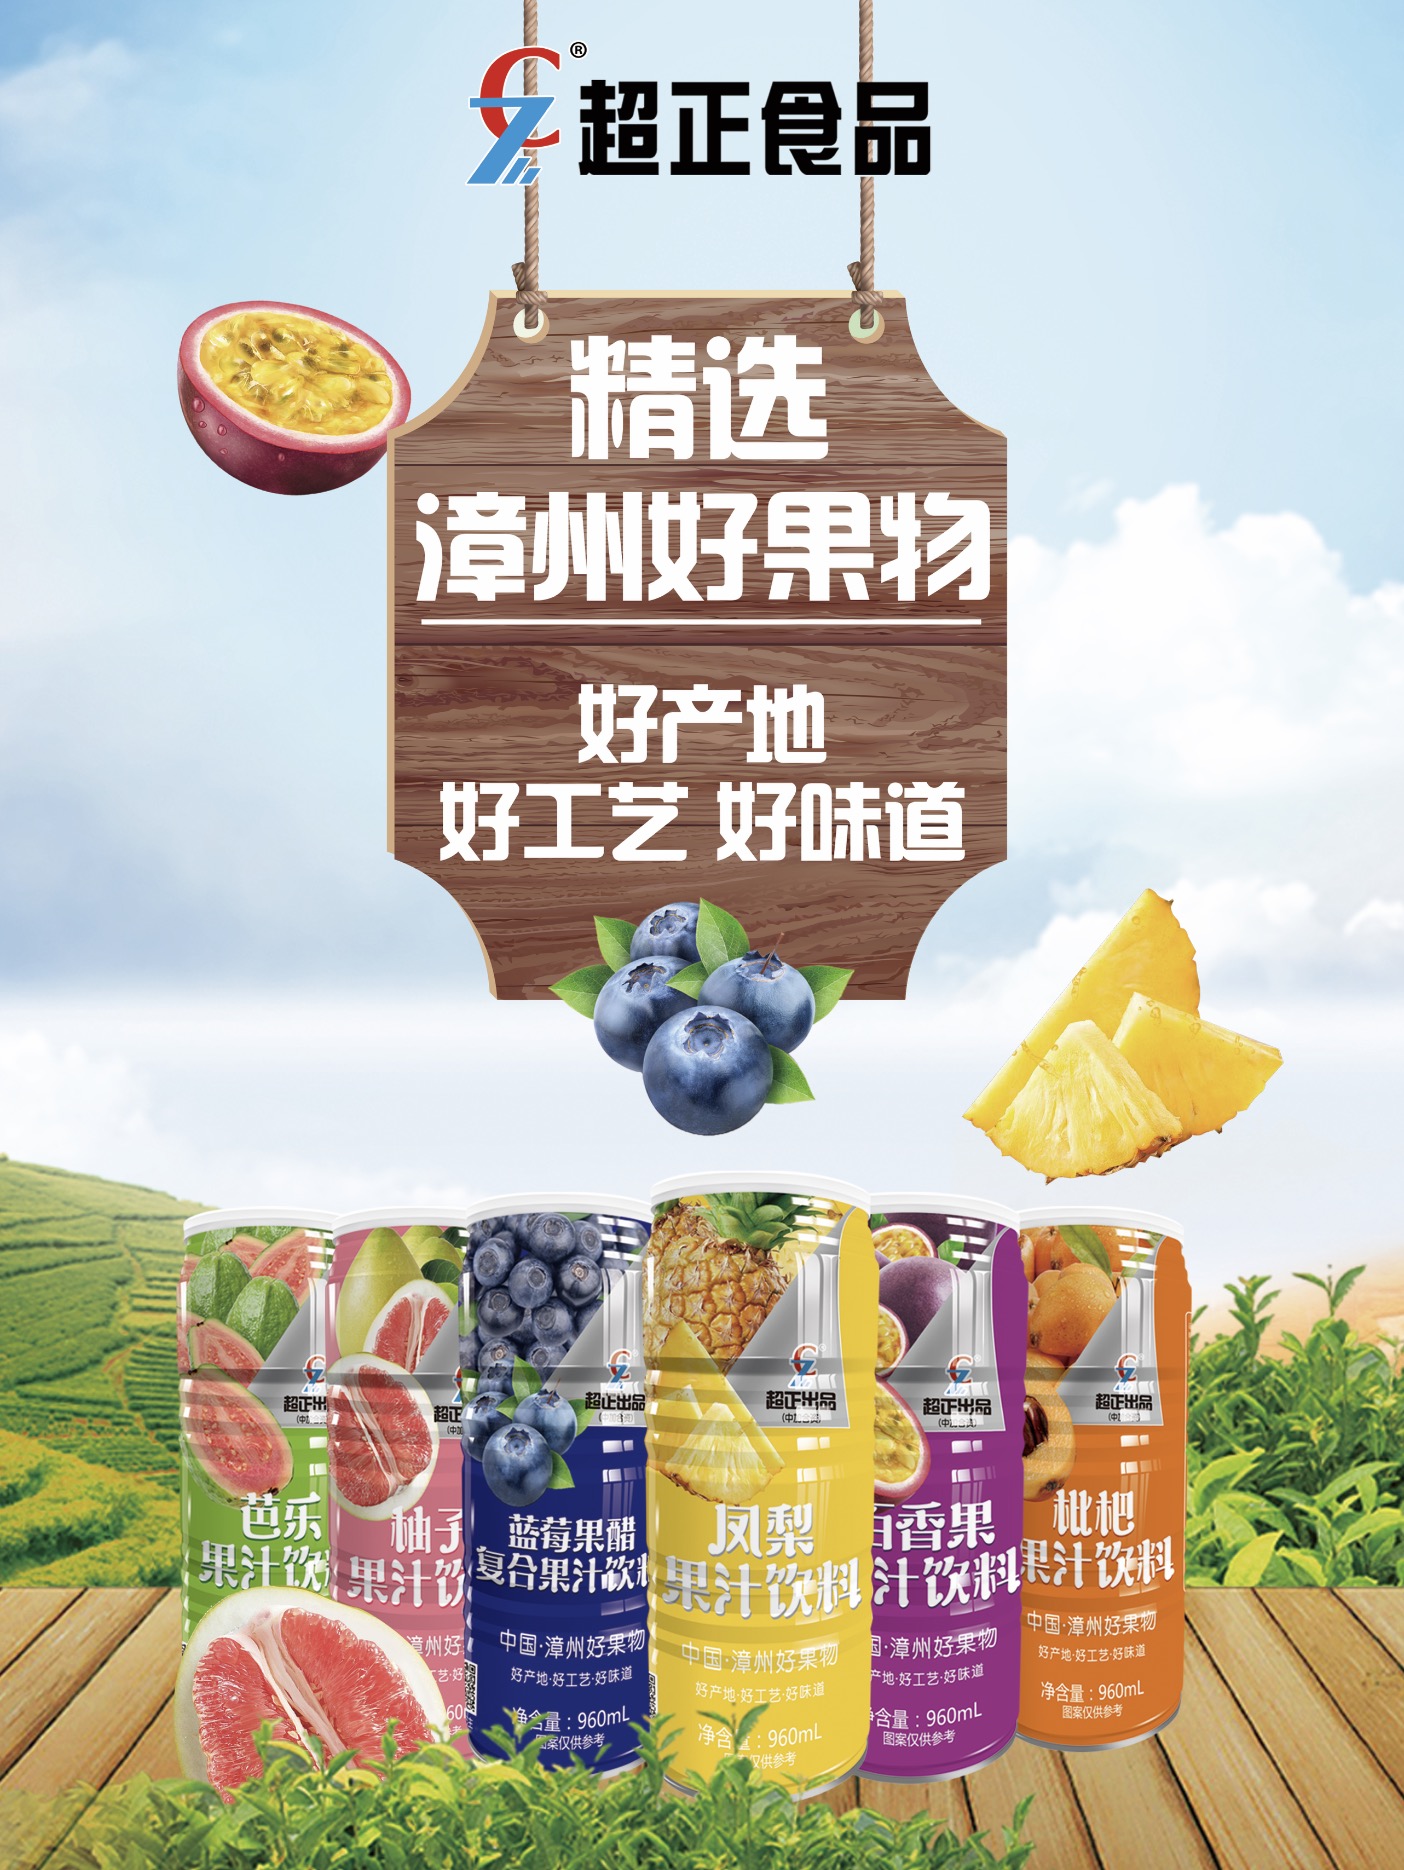 fruit juice drink of chao zheng